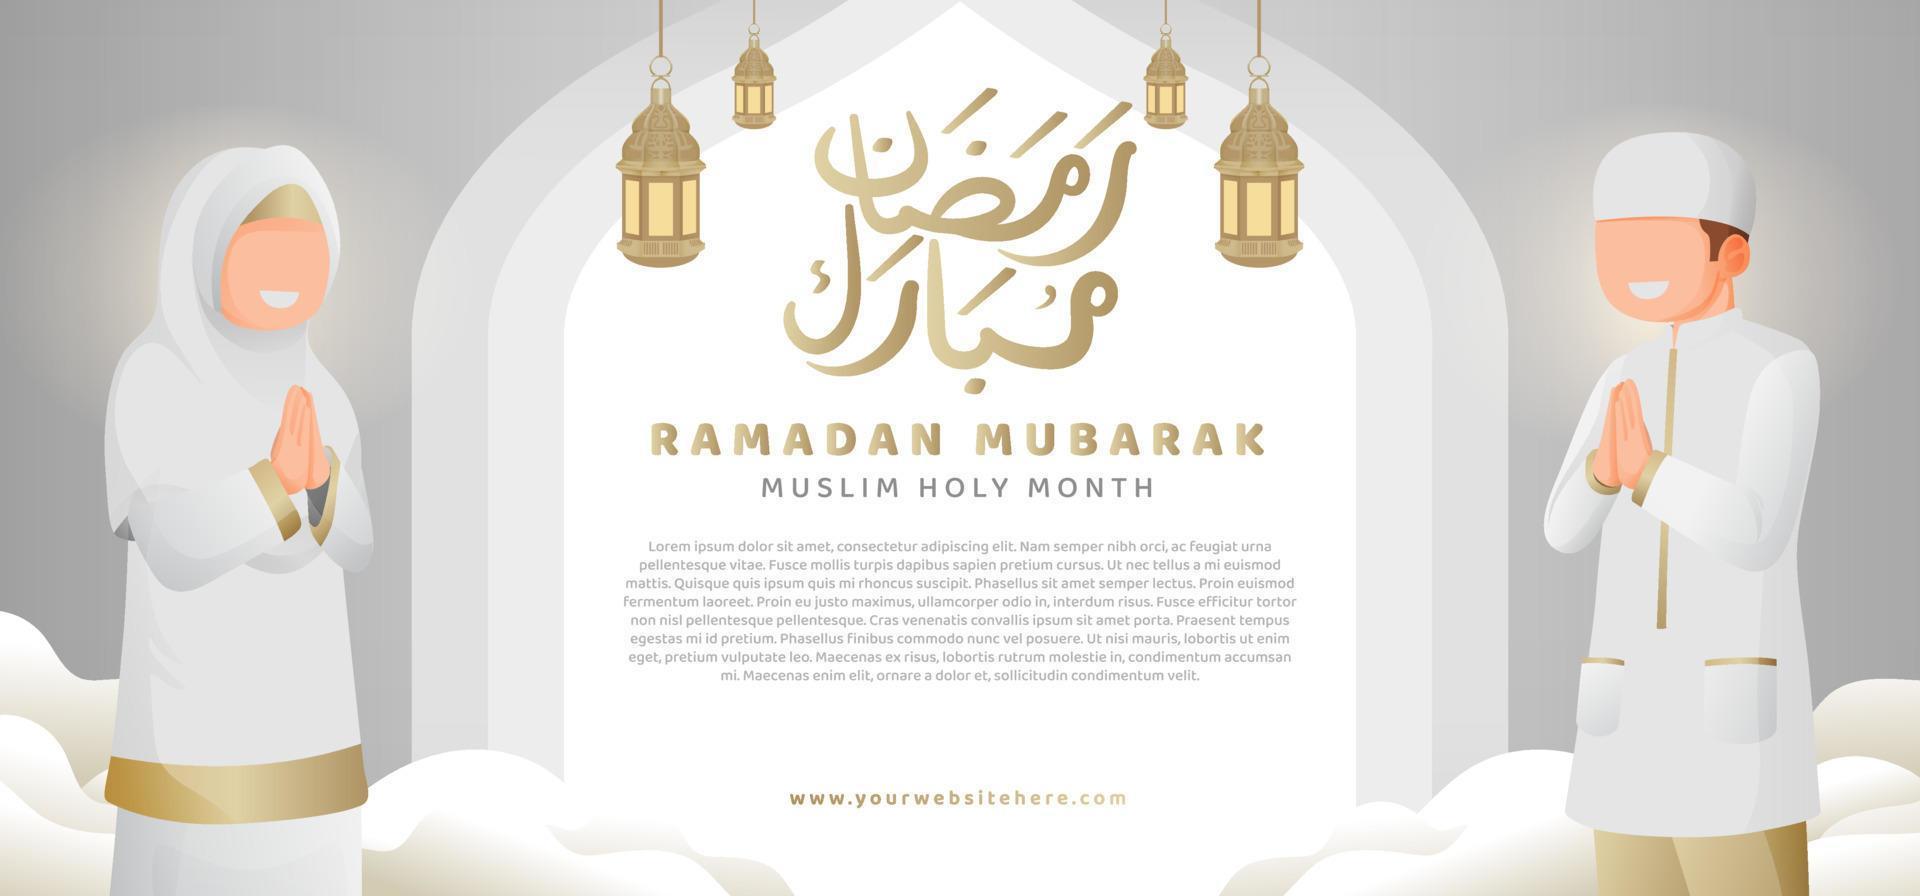 rena vit guld ramadan mubarak kareem med muslim man och kvinna illustration horisontell baner mall vektor